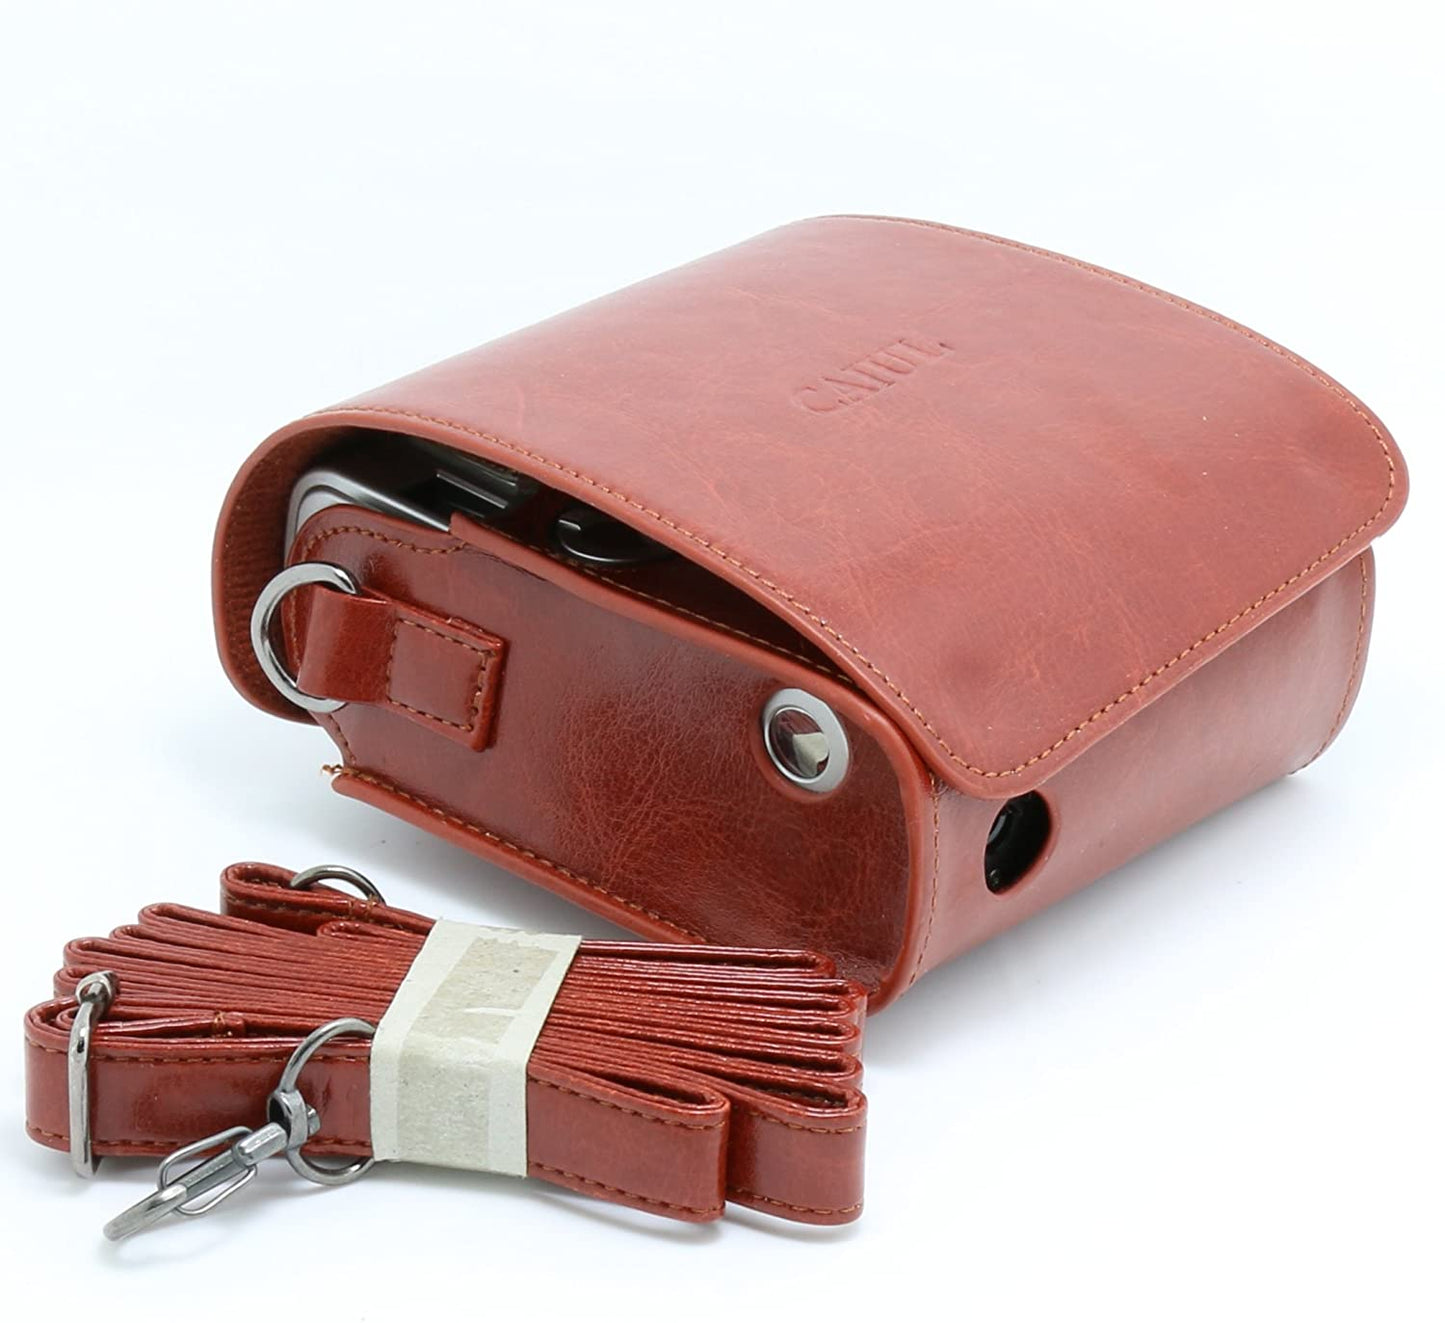 Fujifilm Instax Mini 90 Case with Strap. Instax Mini Neo 90 Camera Bag.  Protective Case for Instax Mini 90 Camera. Instax Camera Pouch.